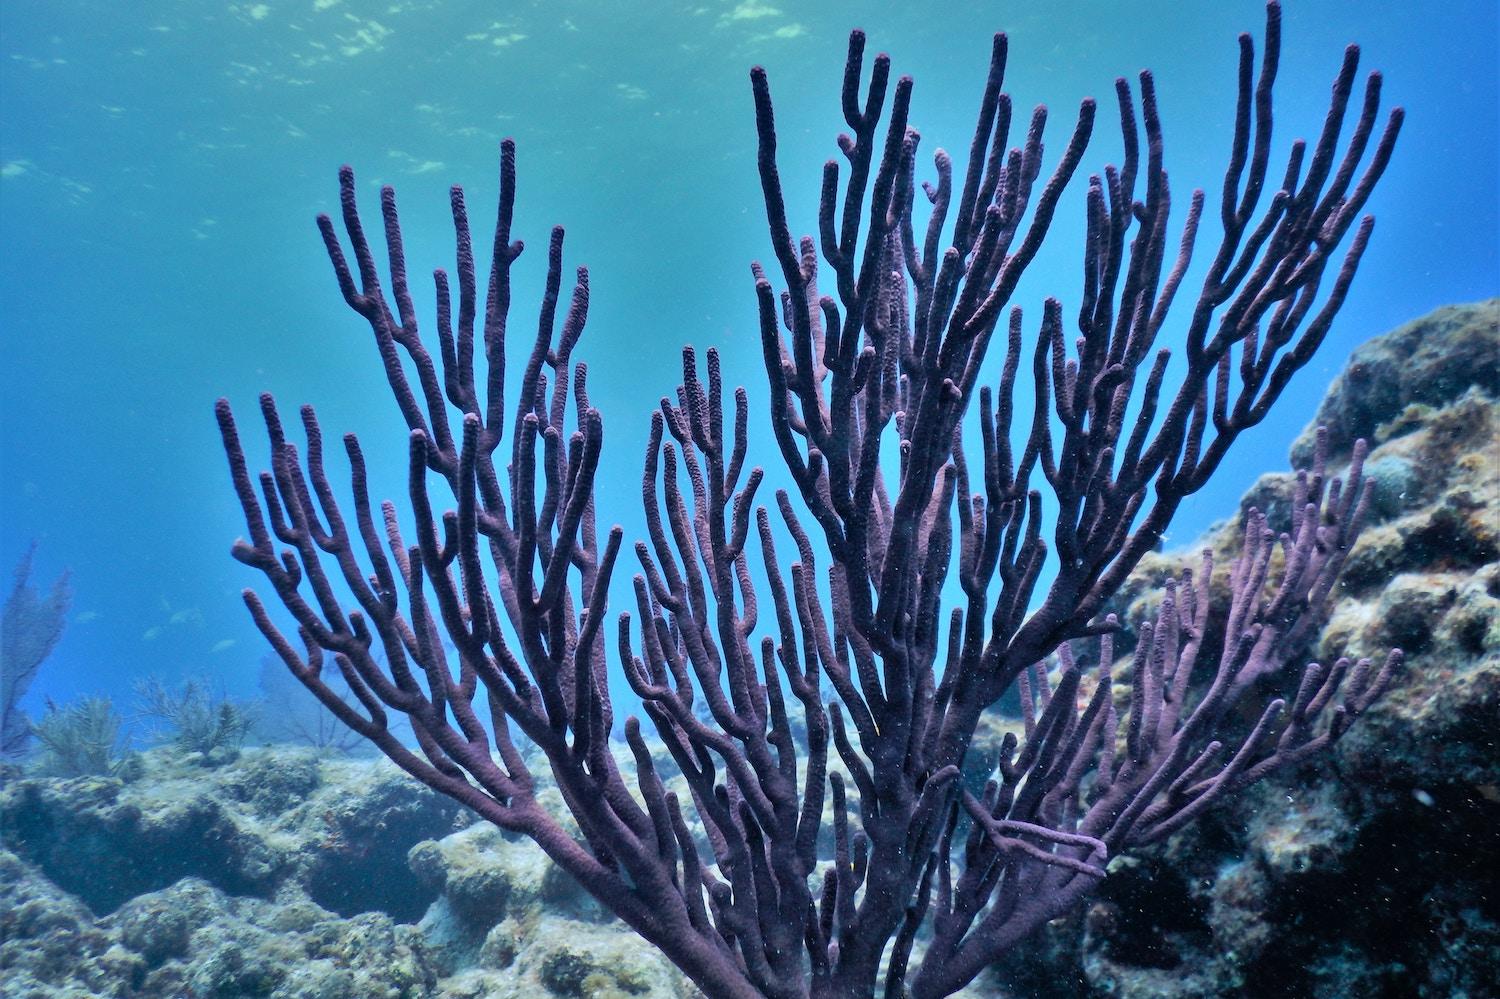 Purple coral growing underwater in the Florida Keys.